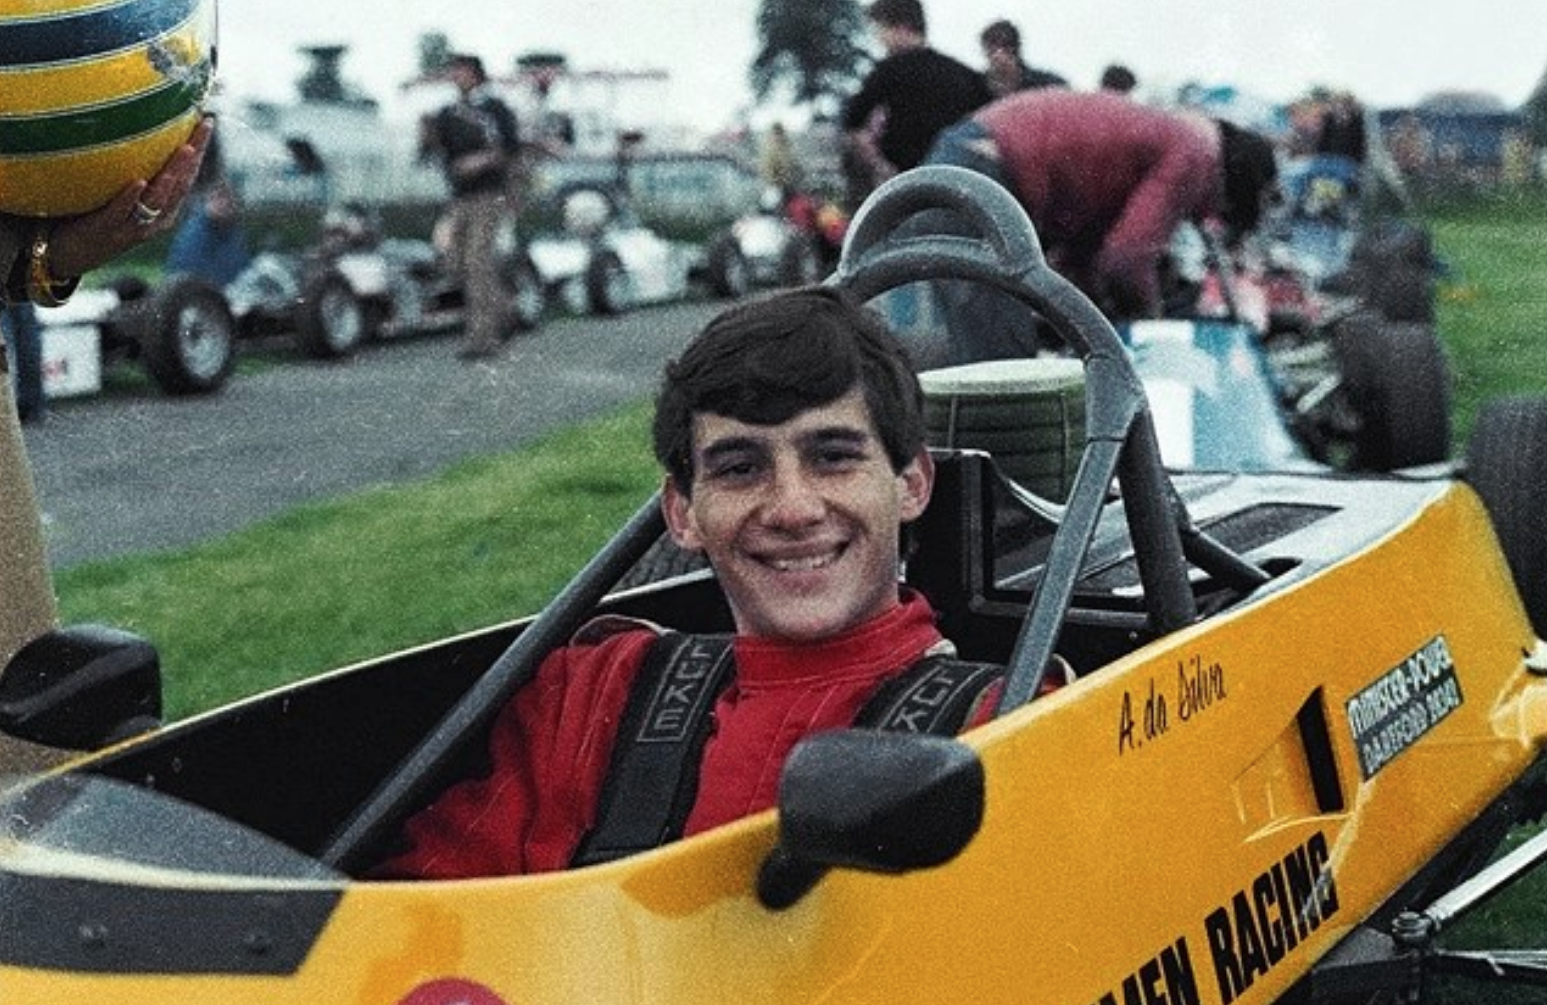 Young Ayrton Senna in 1981